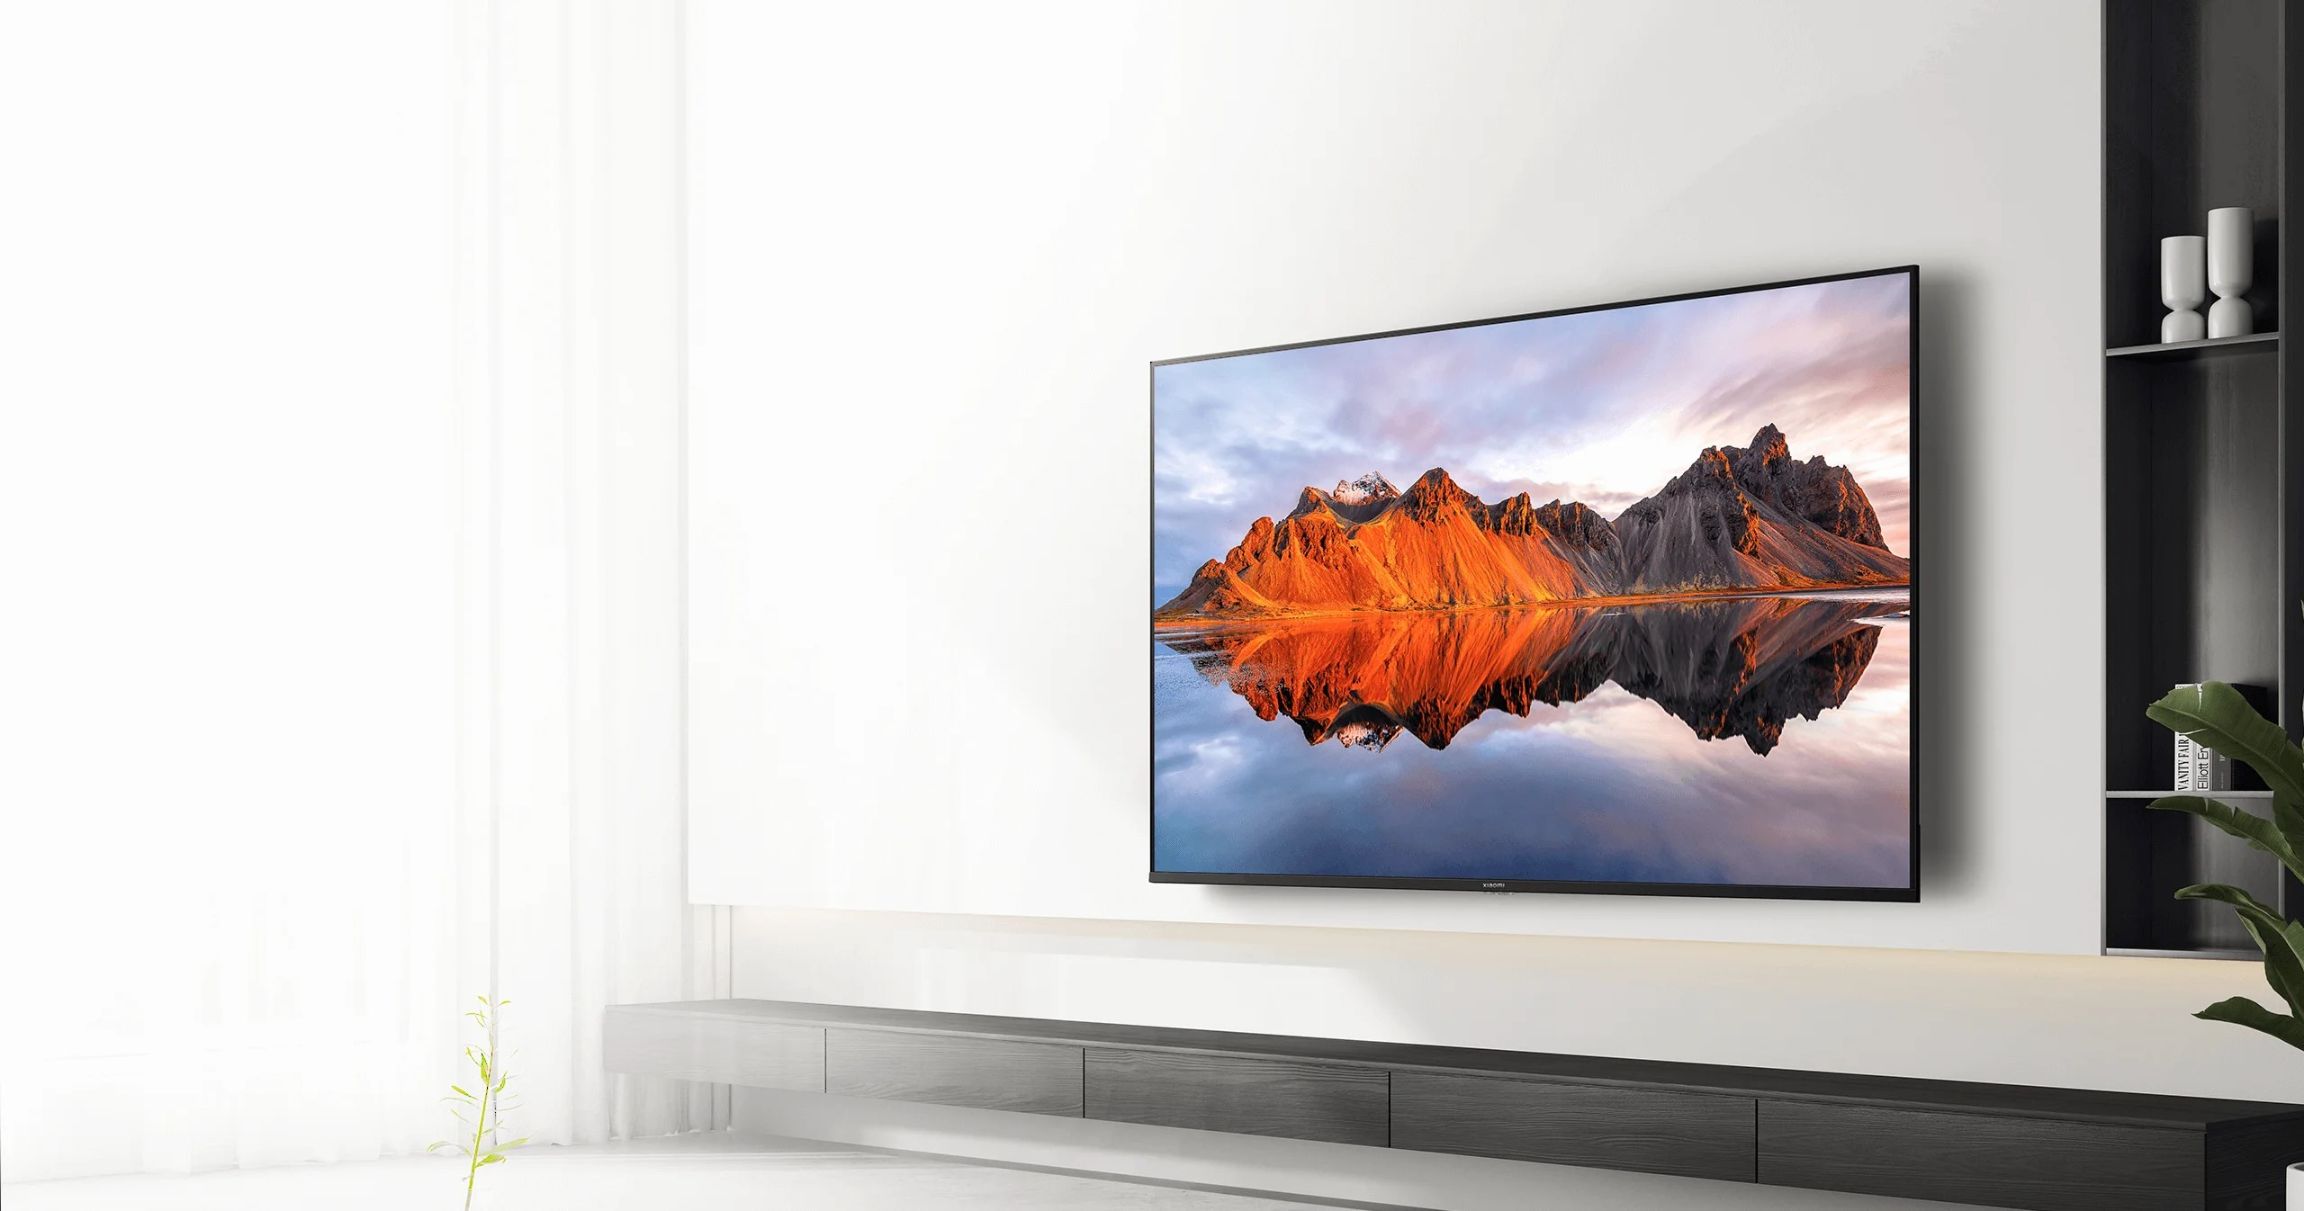 TV A 55 Trải nghiệm hệ sinh thái Nhà thông minh với ưu đãi lên đến 59% từ Xiaomi